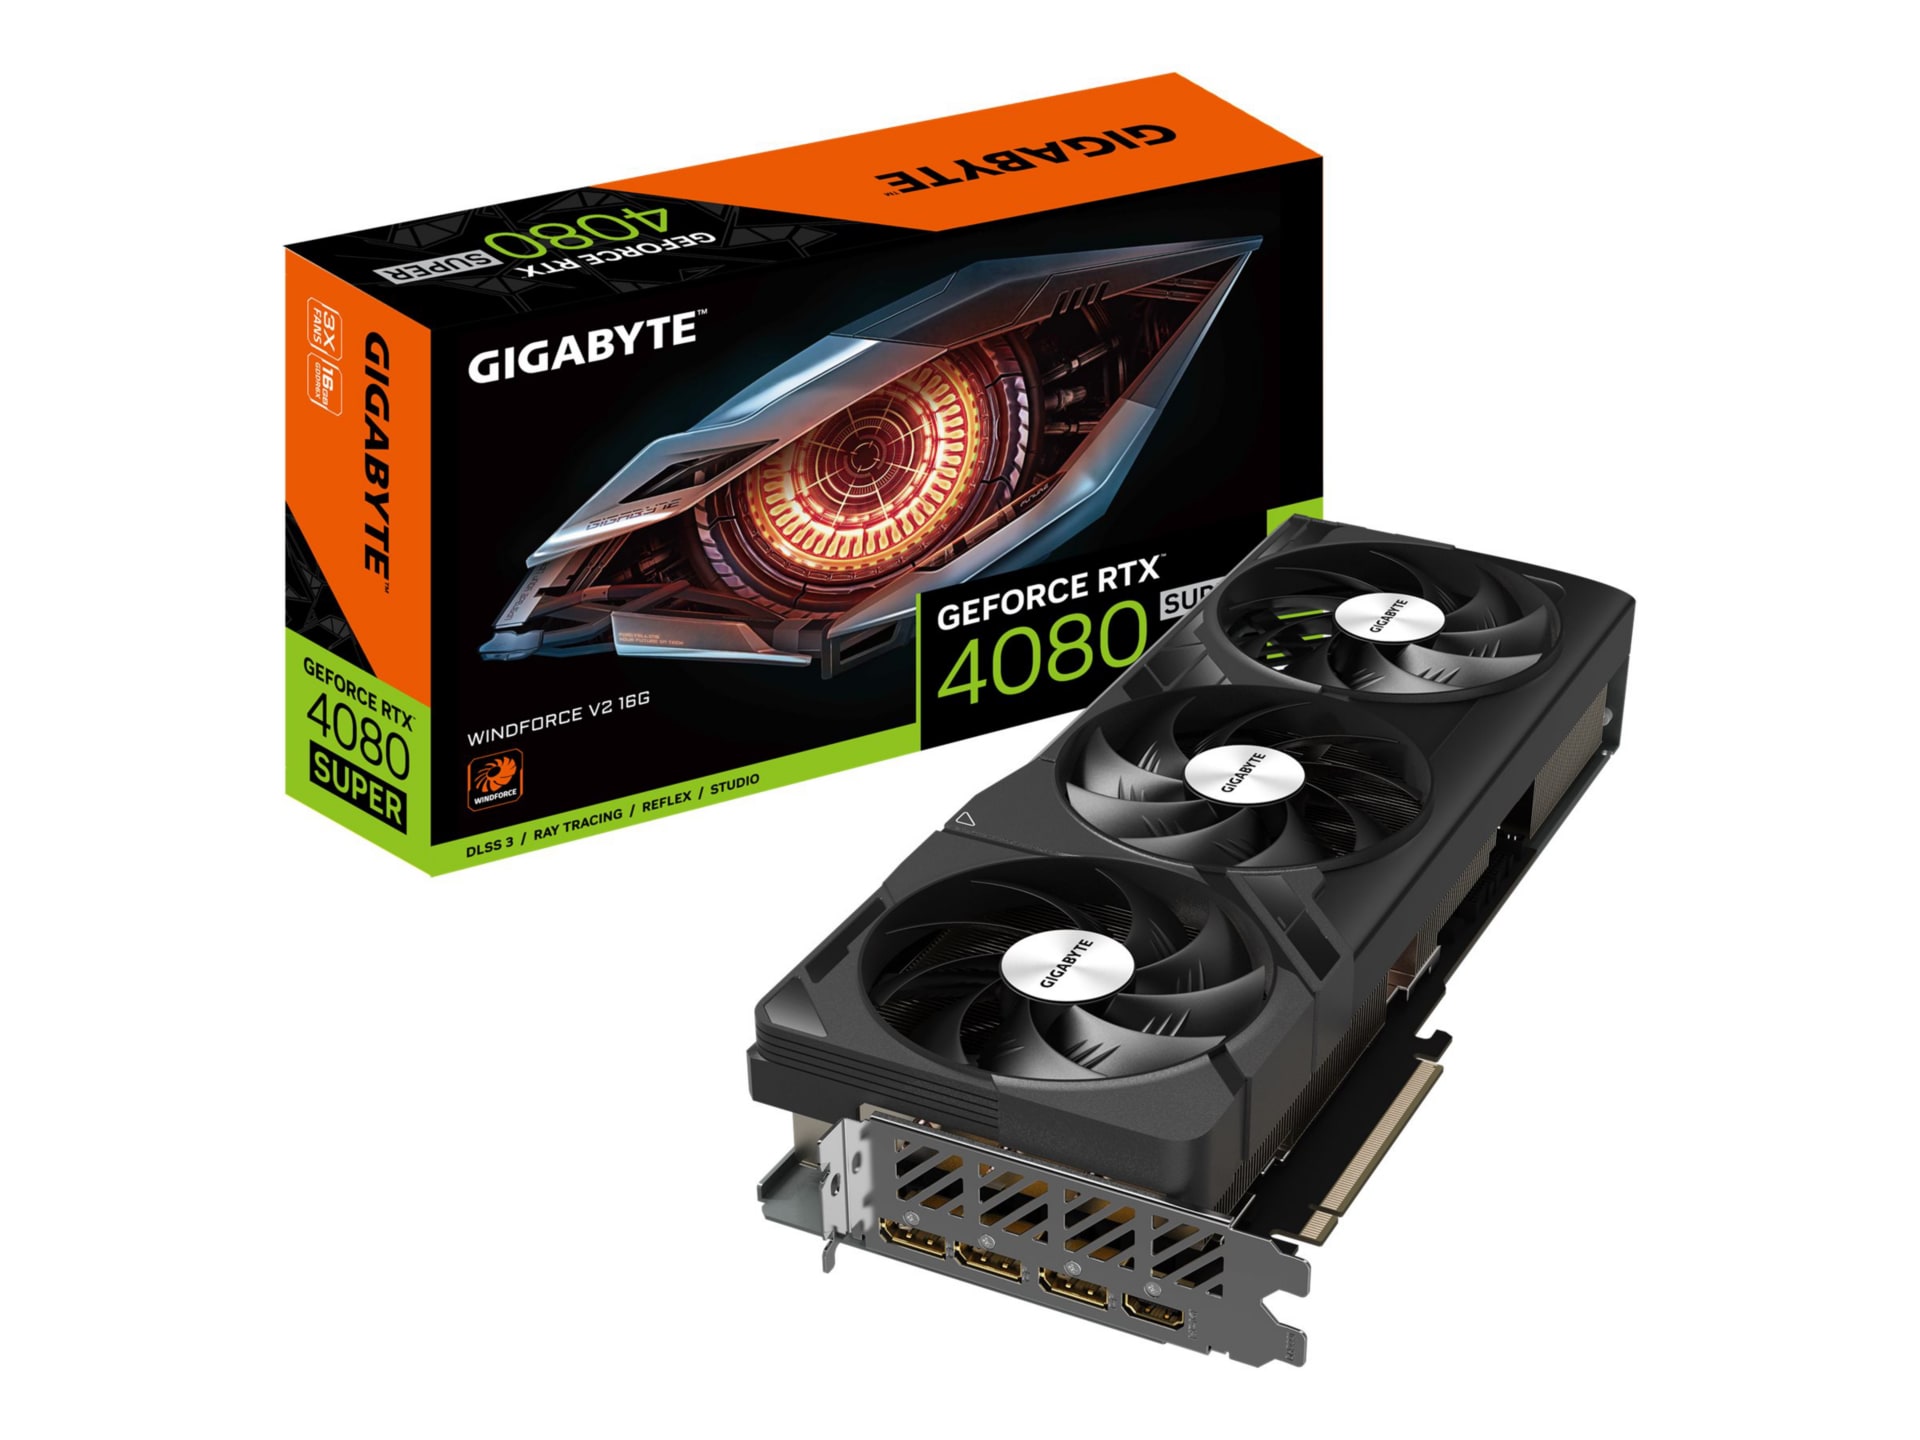 Gigabyte GeForce RTX 4080 SUPER WINDFORCE V2 16G - graphics card - NVIDIA G